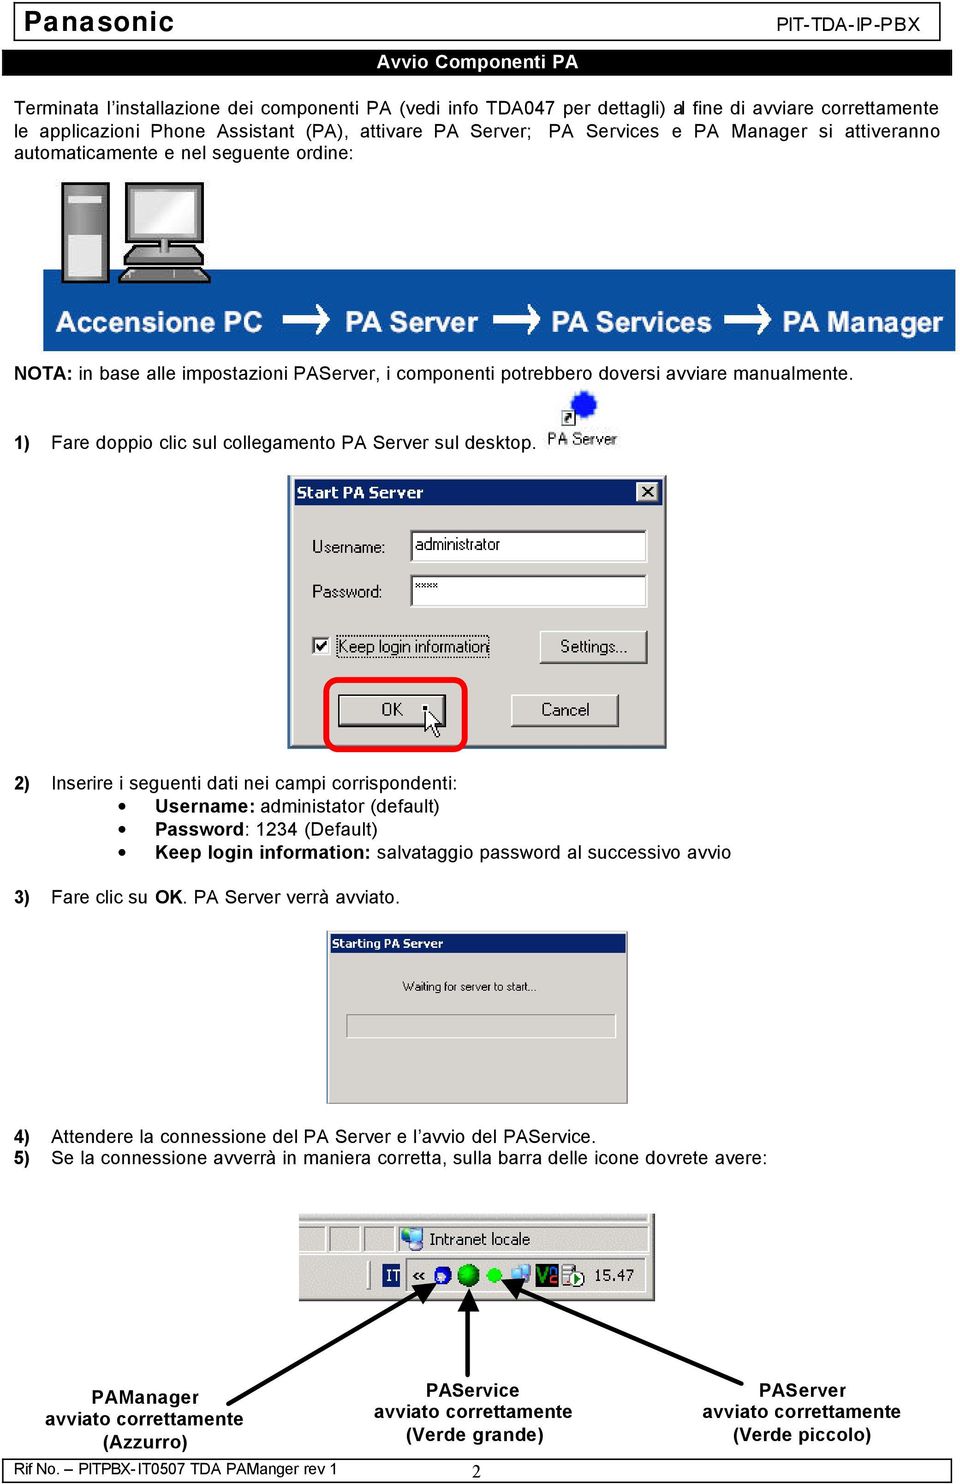 1) Fare doppio clic sul collegamento PA Server sul desktop.